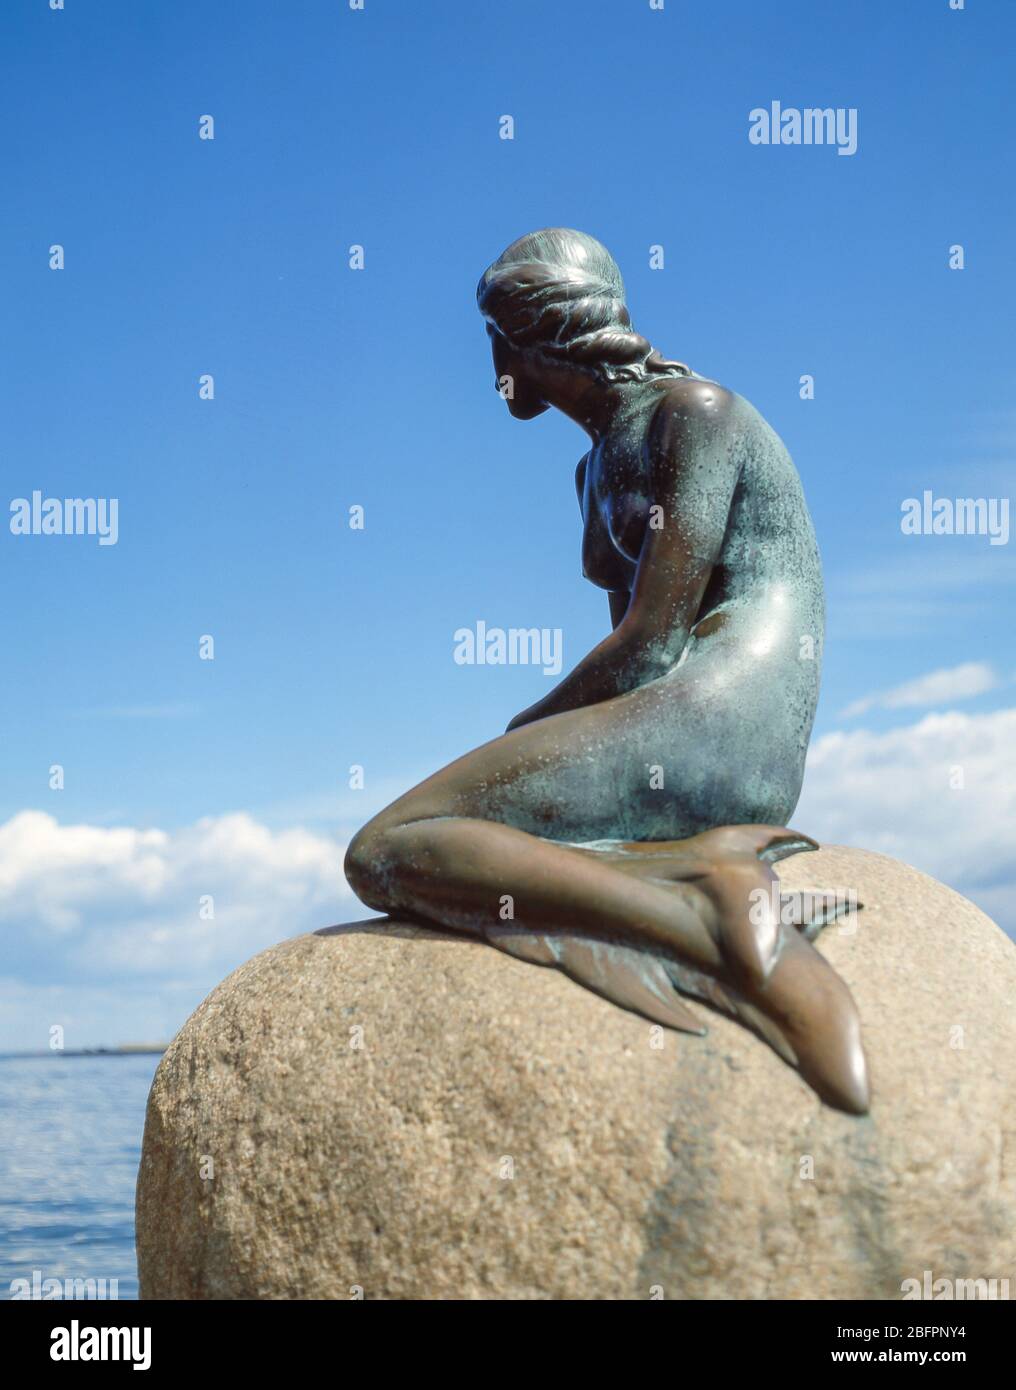 La statue de la petite Sirène (Den Lille Havfrue), Copenhague (Kobenhavn), Royaume du Danemark Banque D'Images